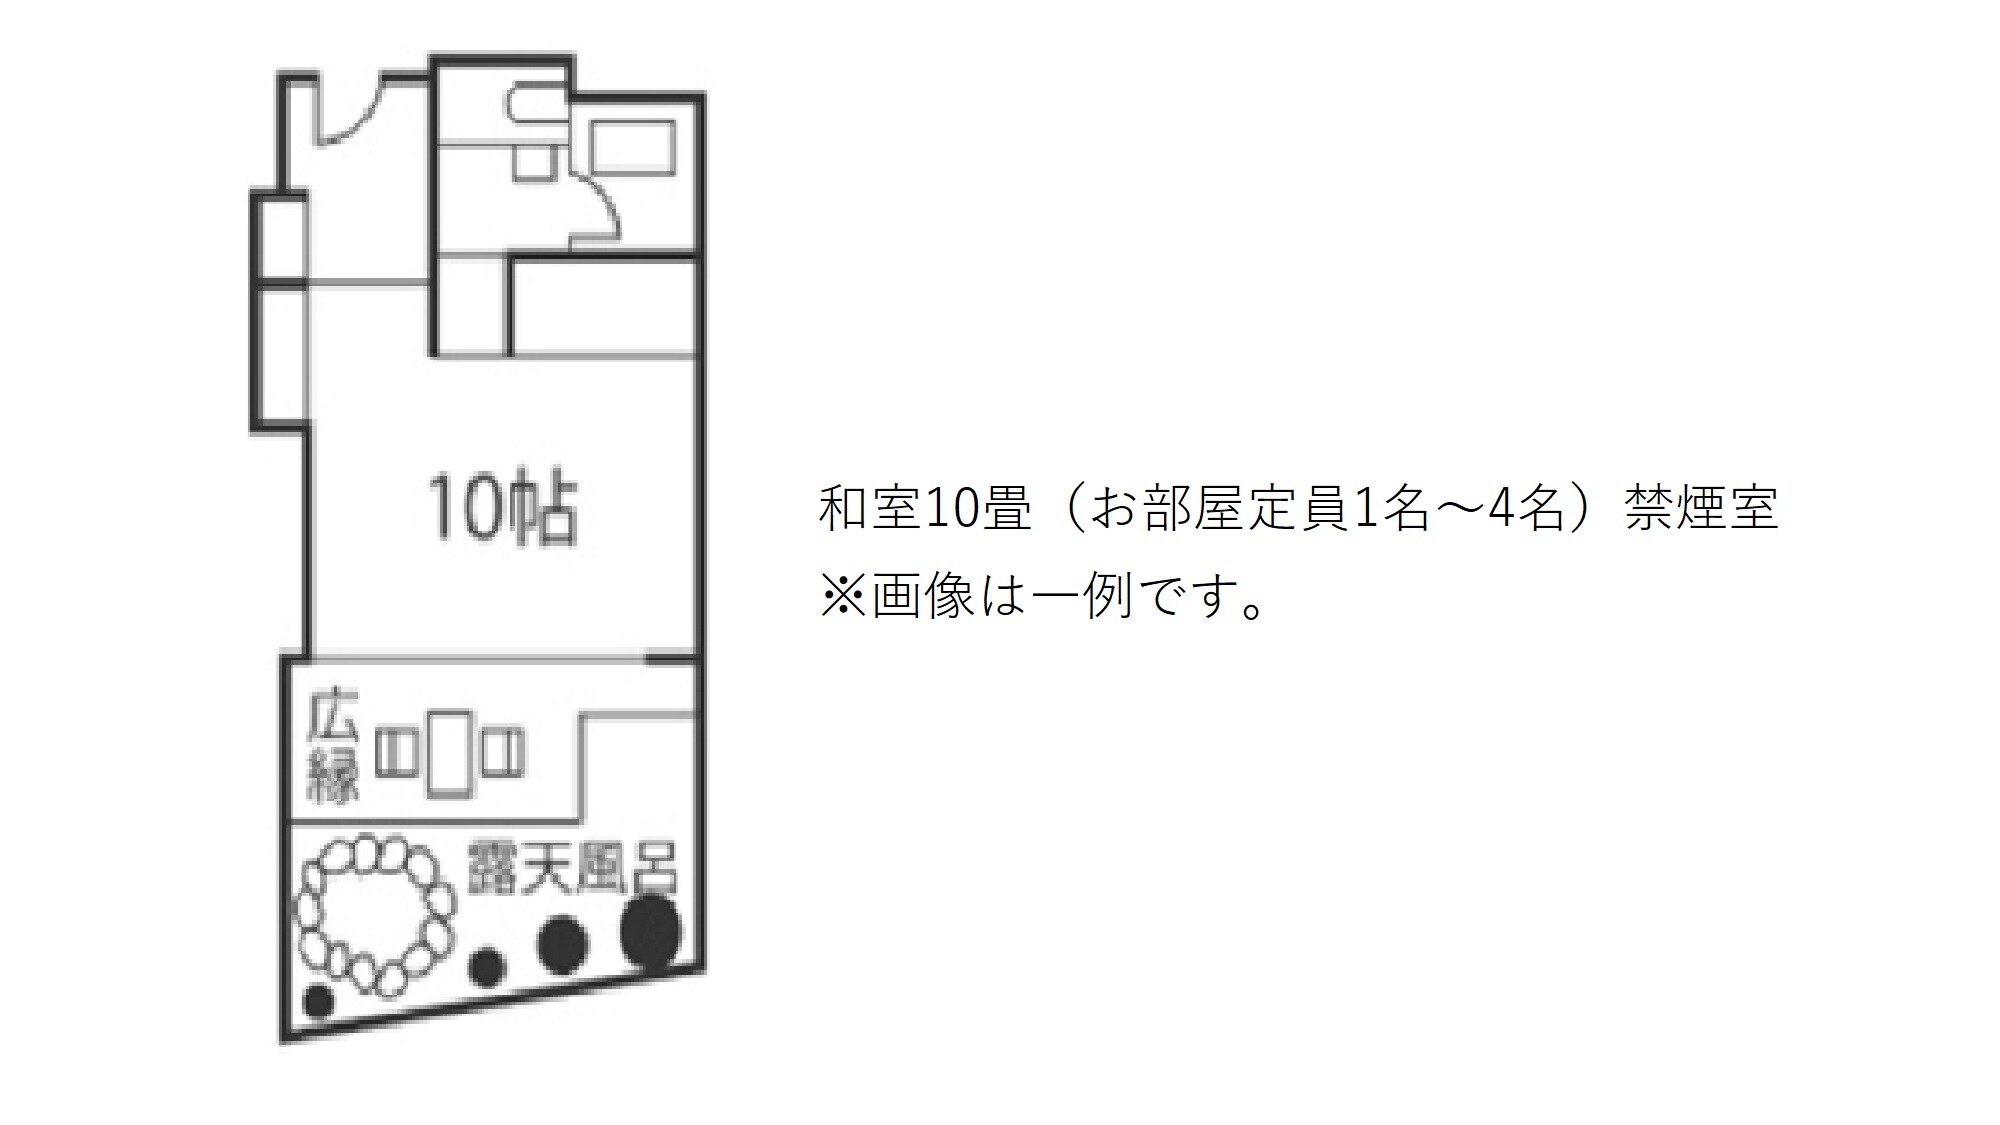 ห้องสไตล์ญี่ปุ่น 10 เสื่อทาทามิ (ความจุห้อง 1-4 คน) ห้องปลอดบุหรี่